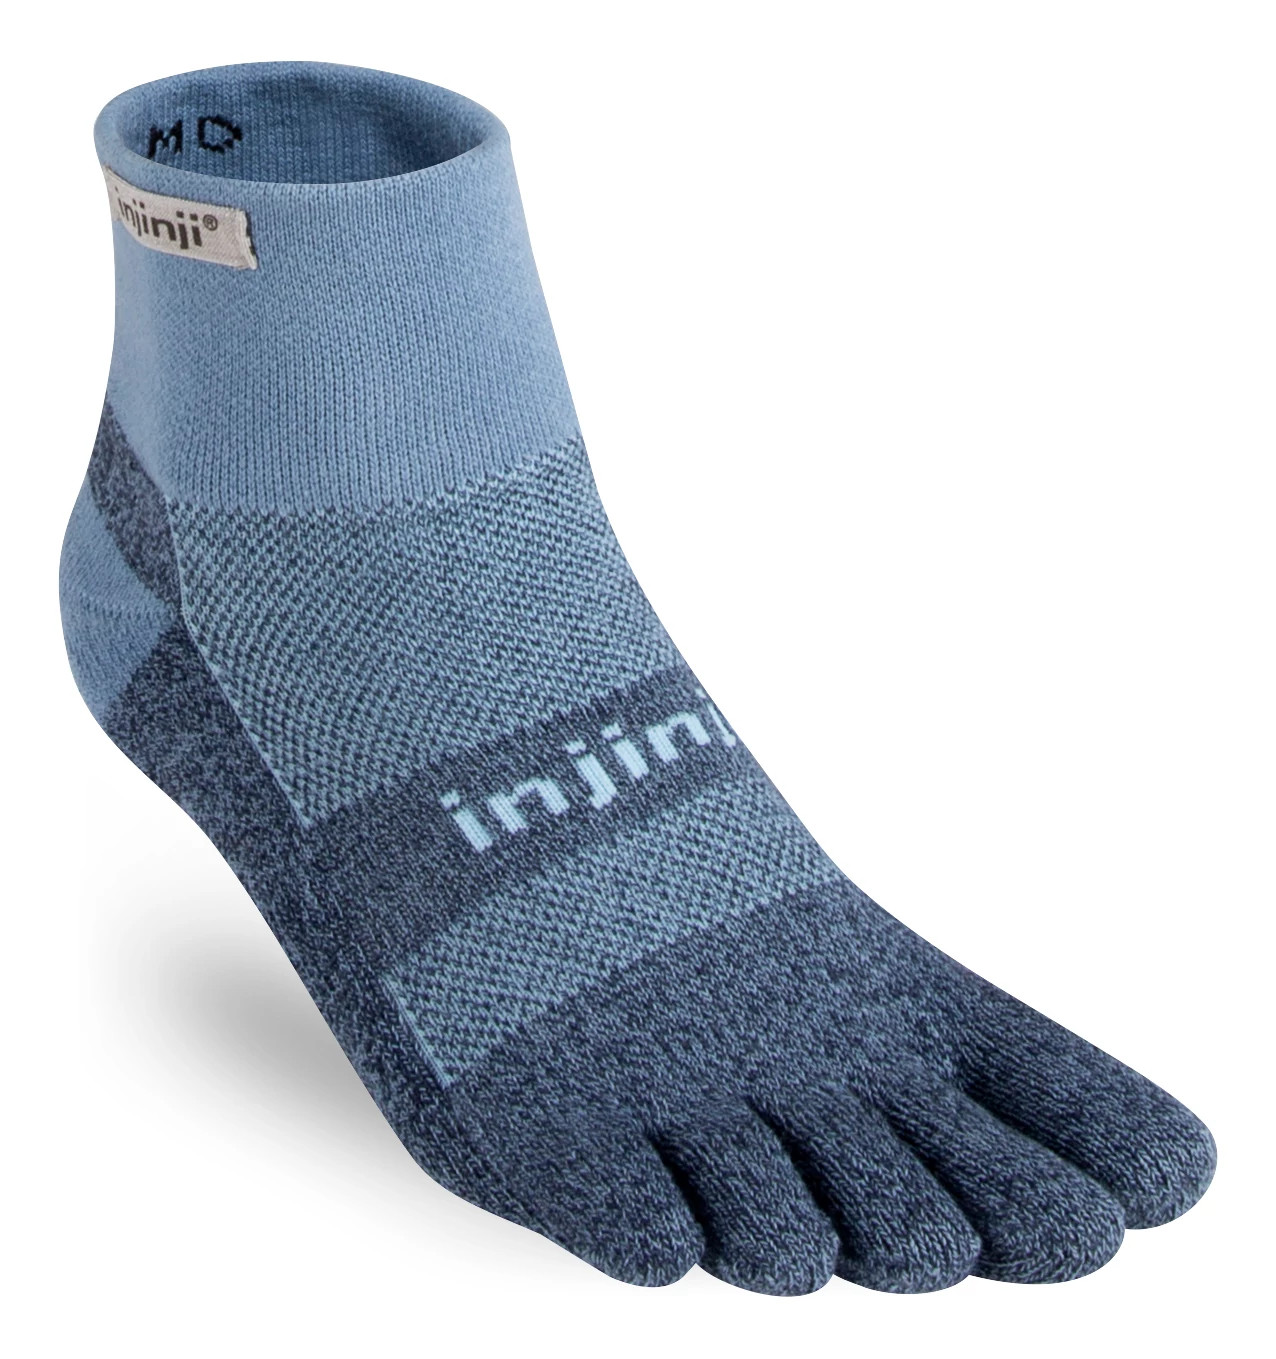 Injinji Trail Midweight Mini-Crew CoolMax Socks